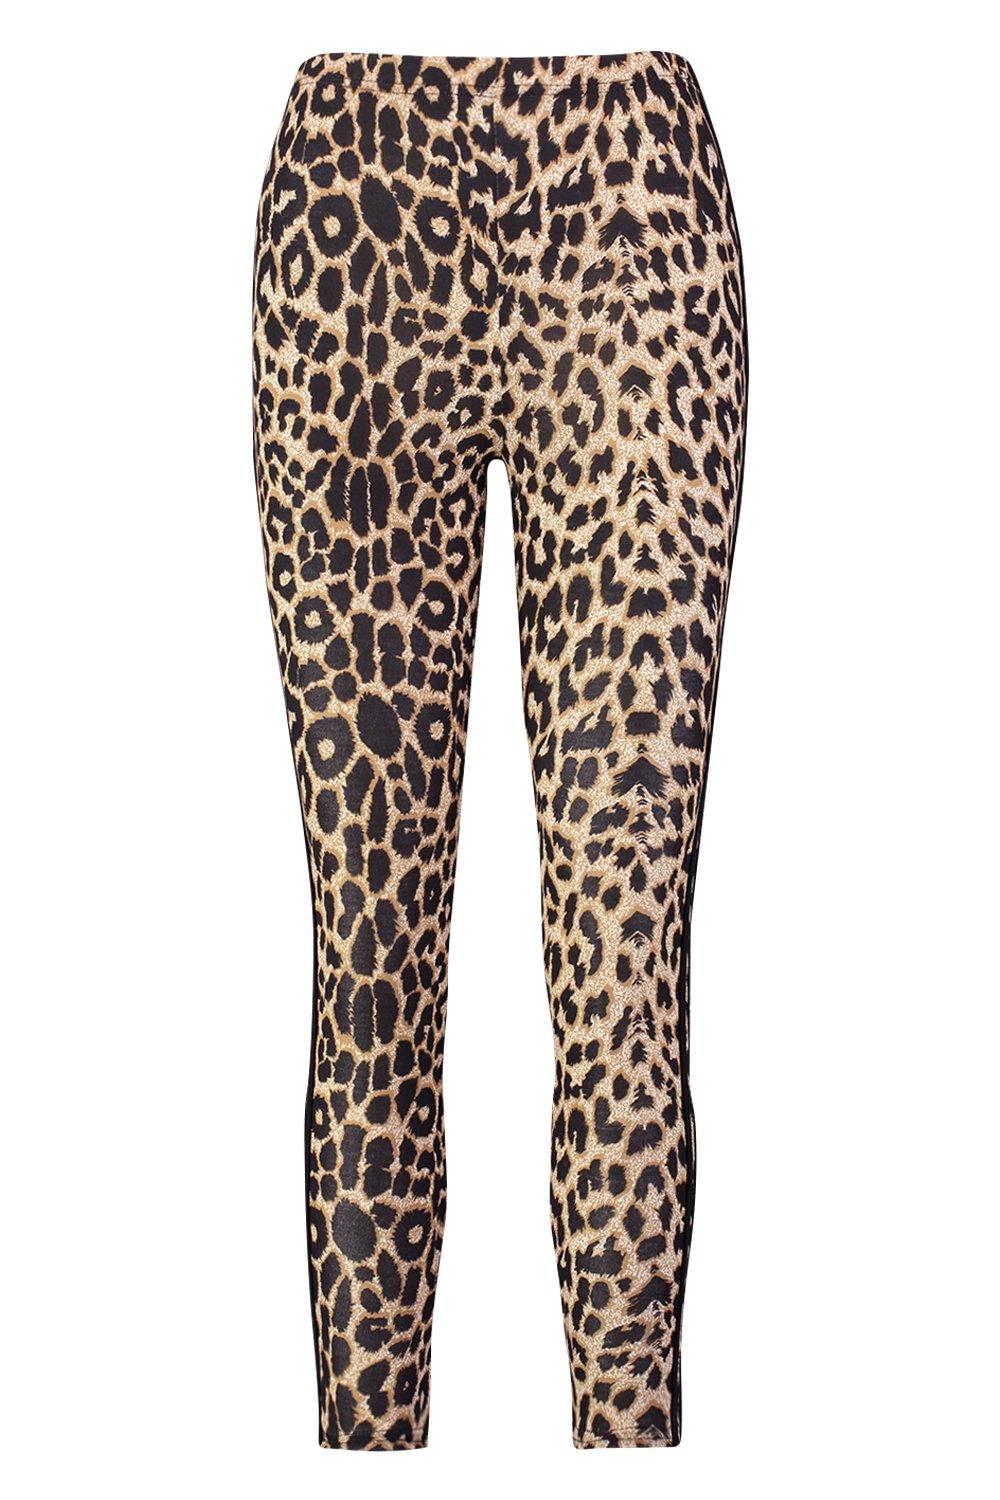 Slinky Leopard Fur Trendy Side Stripe on Black Leggings